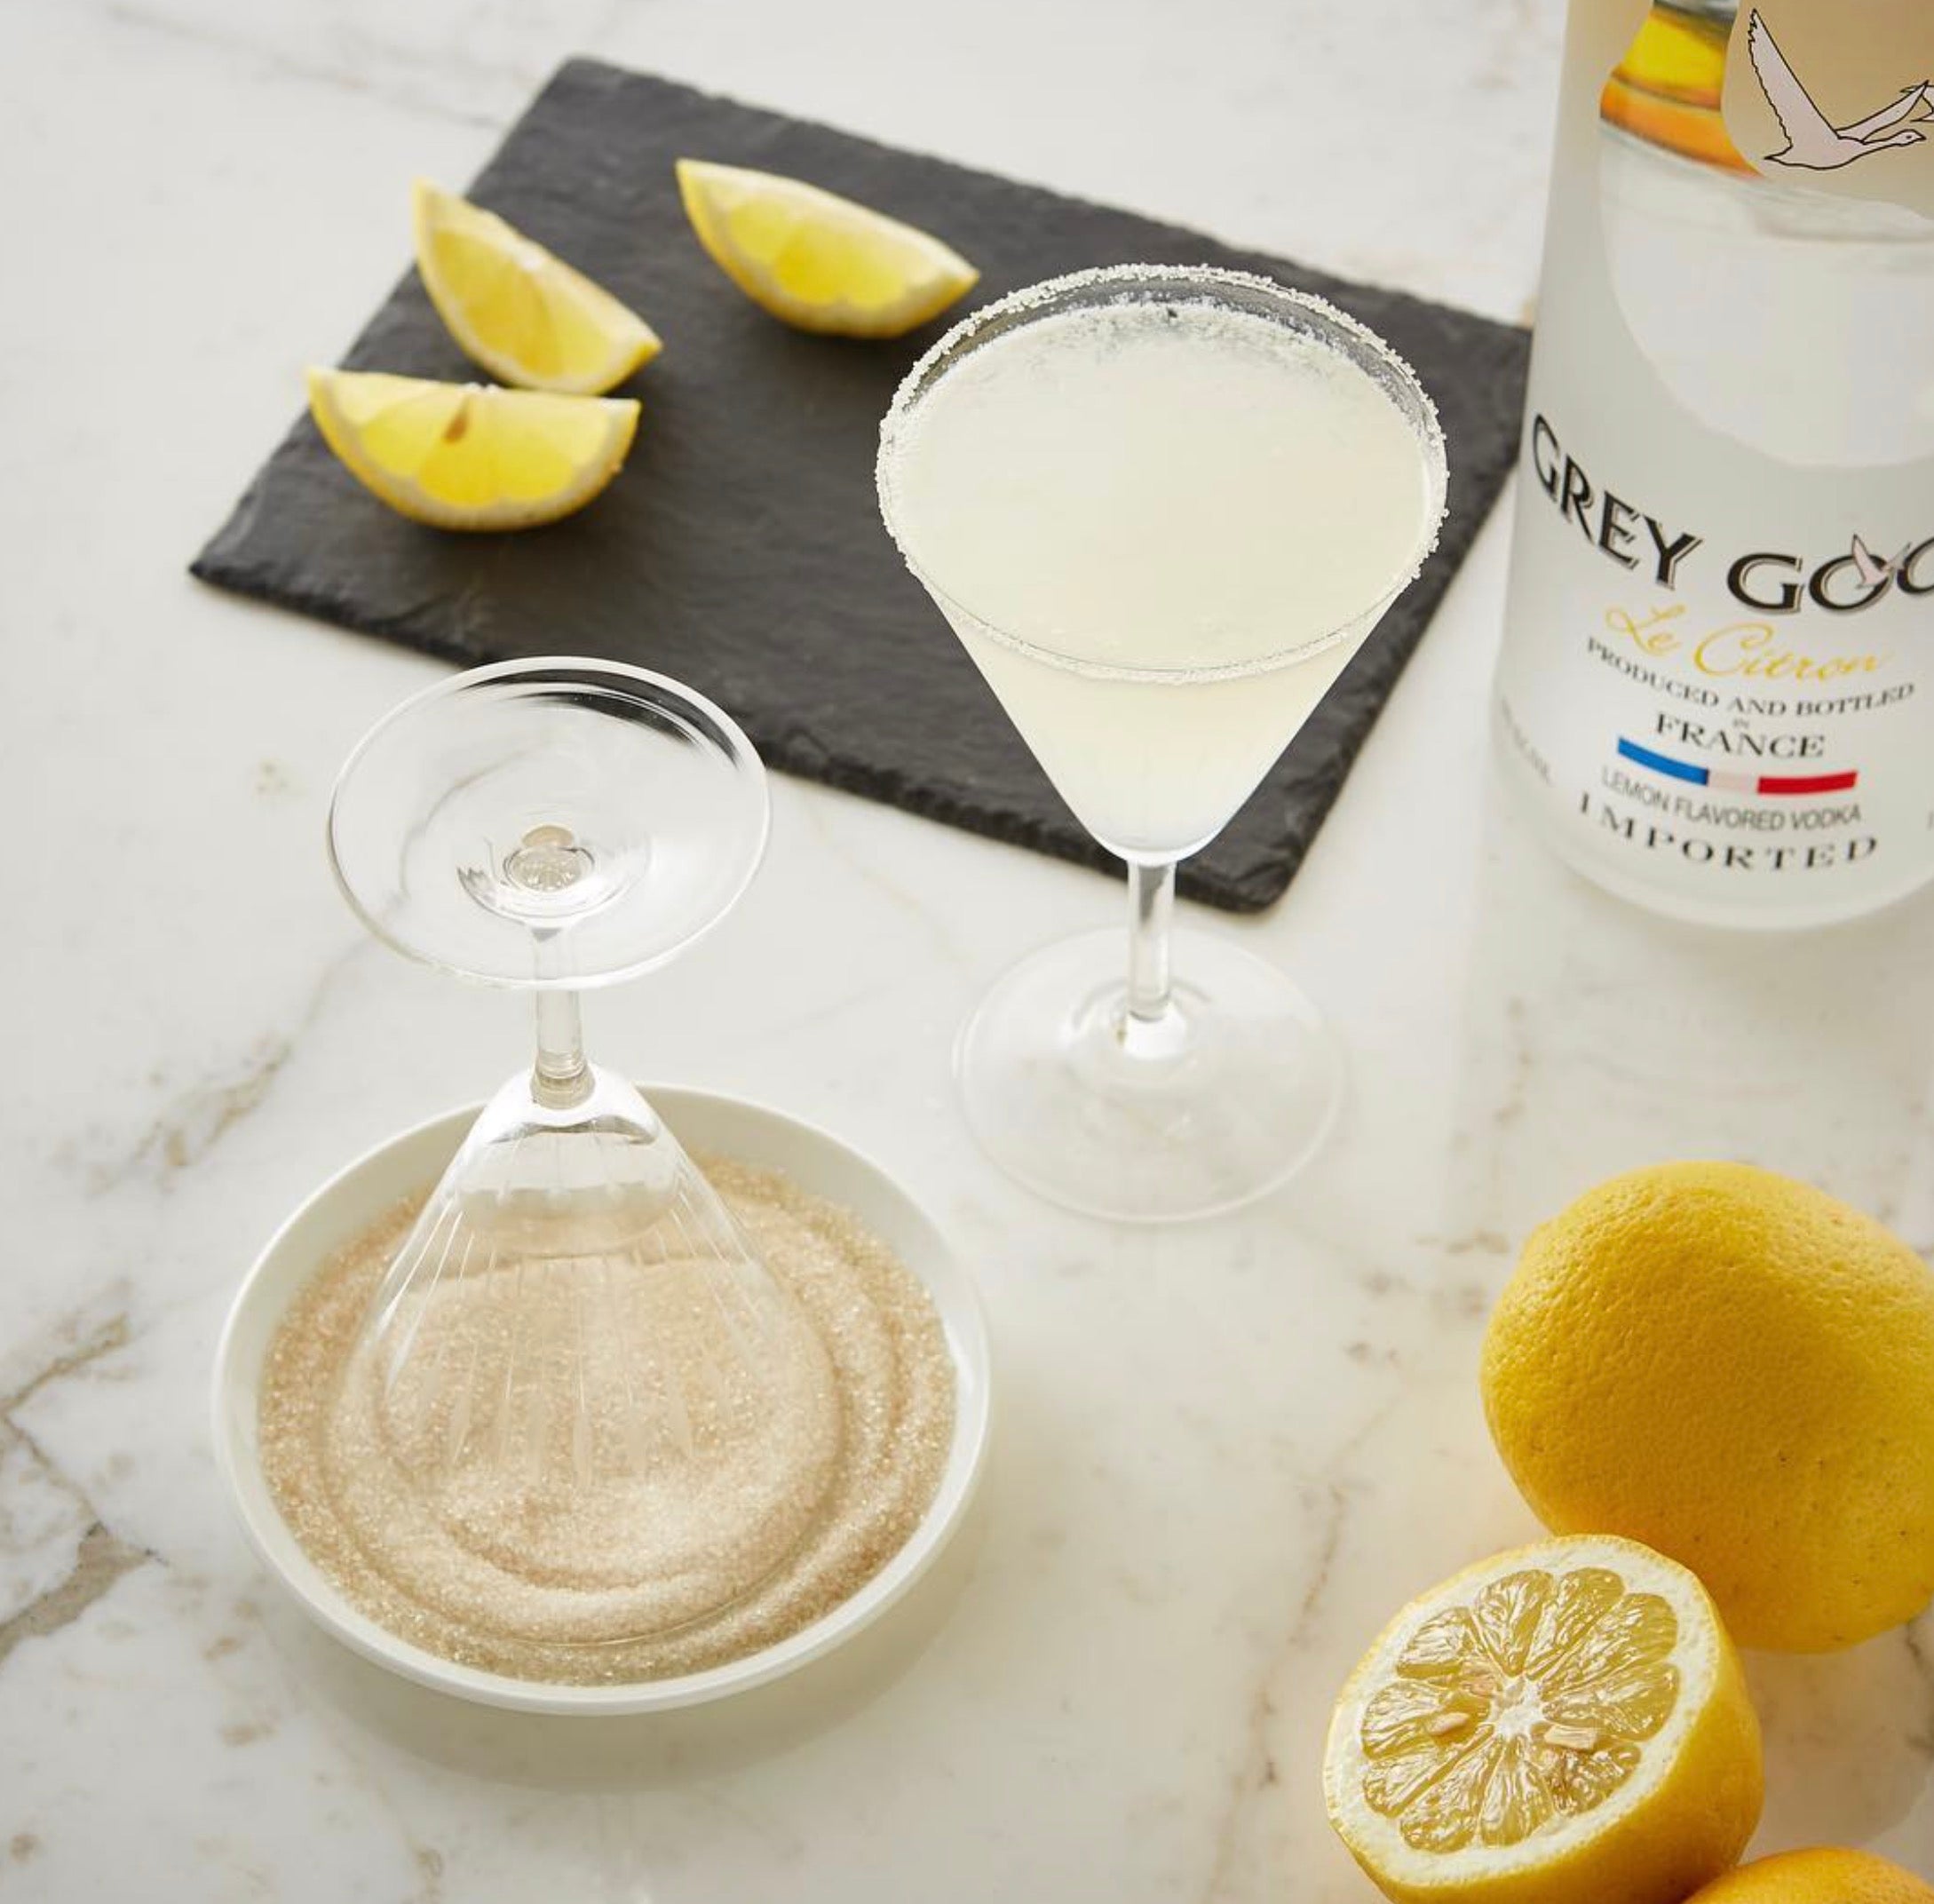 Grey Goose Vodka, Le Citron - 750 ml